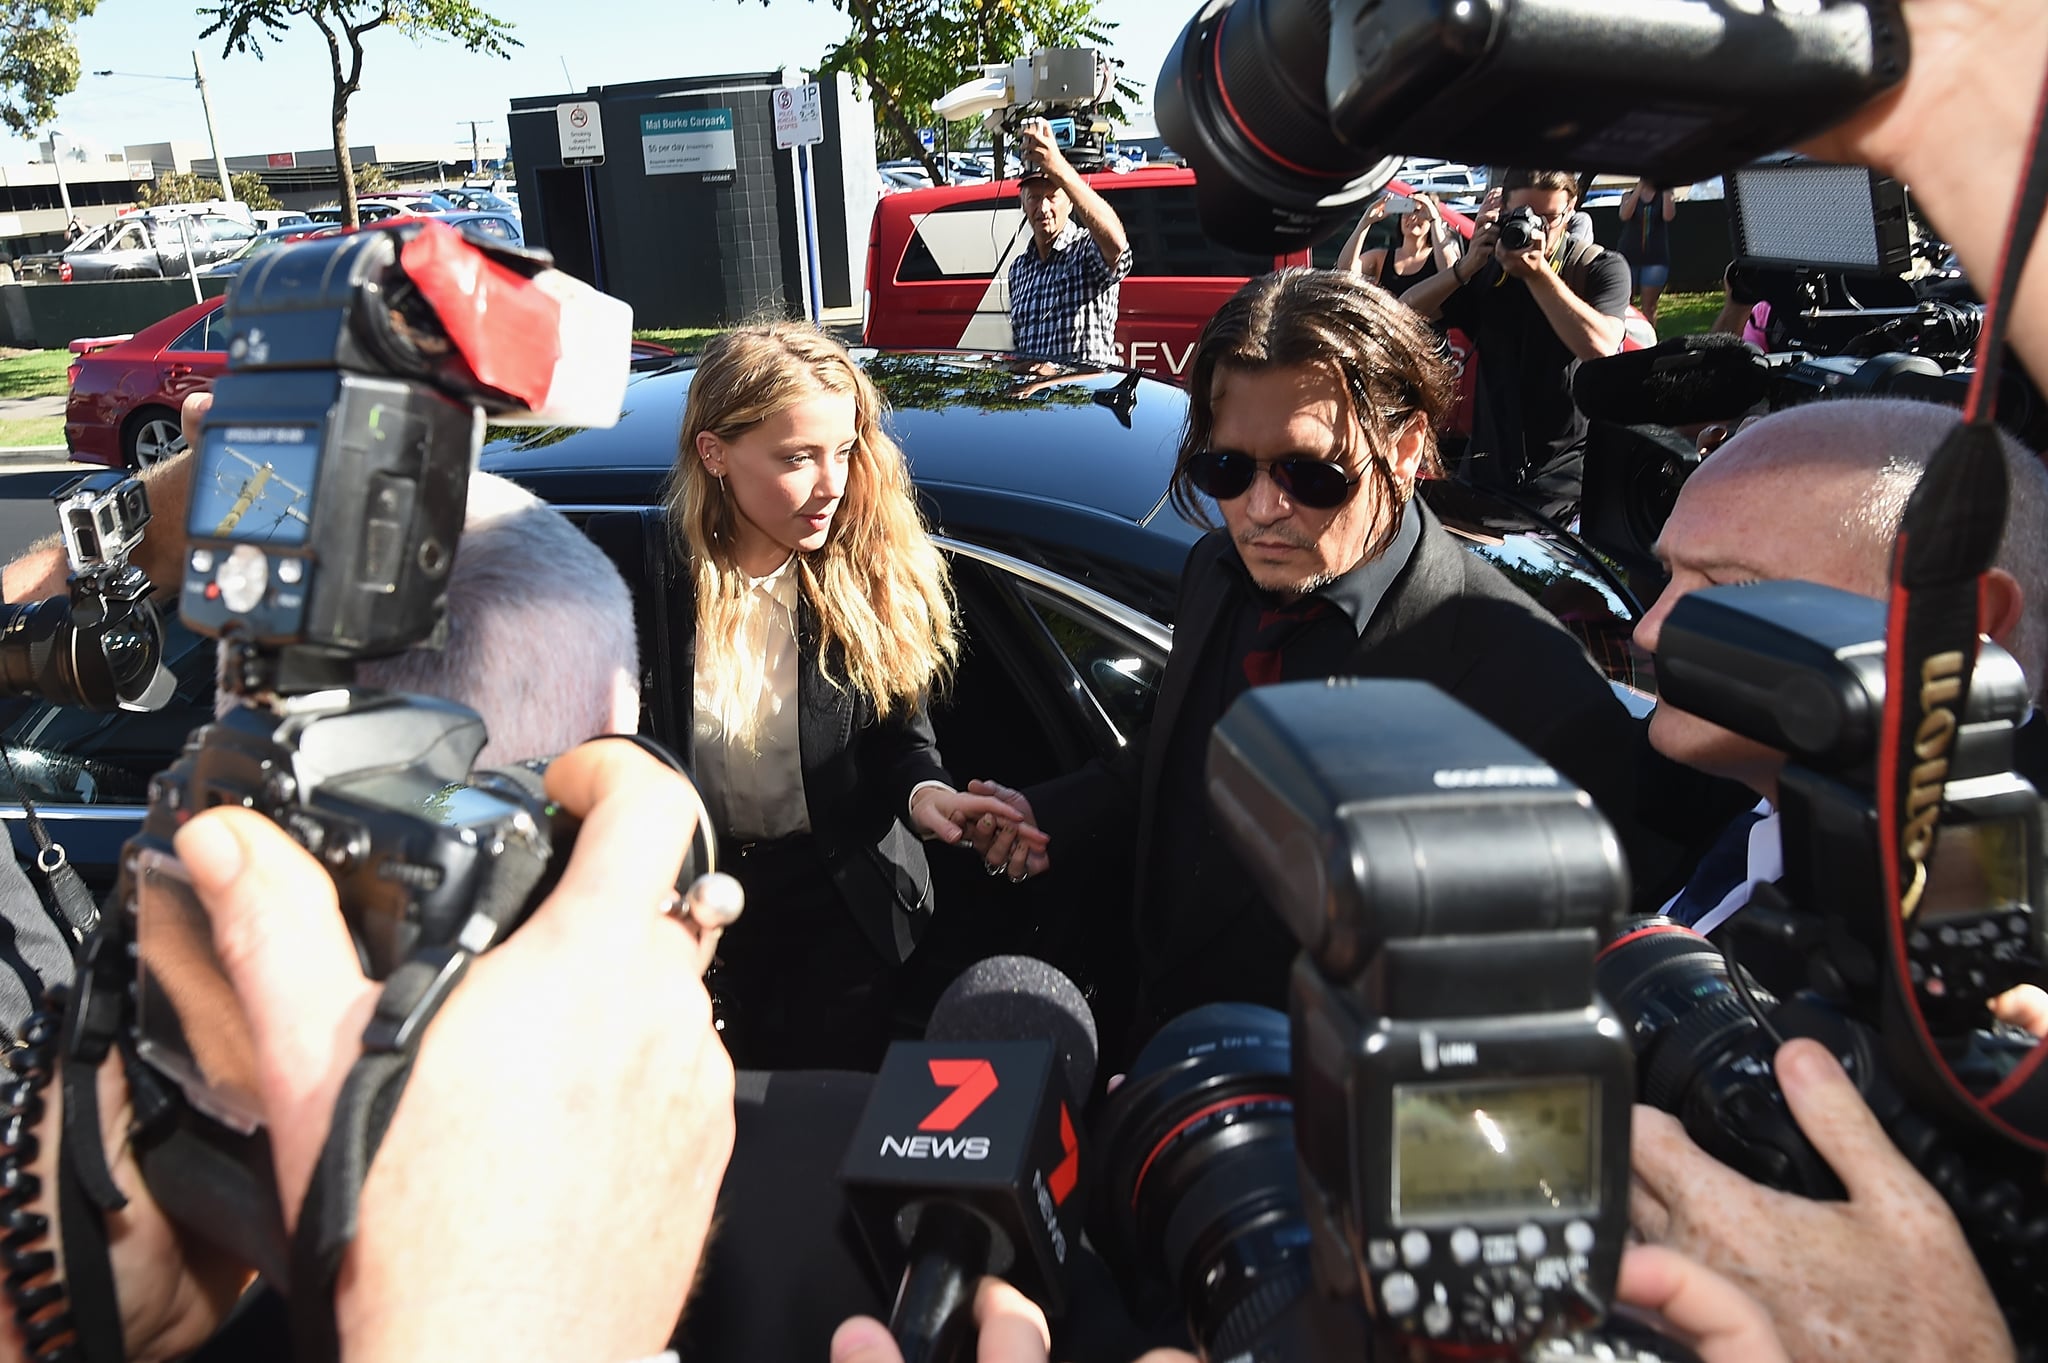 GOLD COAST, AUSTRALIE - 18 AVRIL : Johnny Depp et Amber Heard arrivent au tribunal de première instance de Southport le 18 avril 2016 à Gold Coast, en Australie.  Heard fait face à deux chefs d'accusation de violation des lois australiennes sur la quarantaine en emmenant prétendument ses chiens, Pistol et Boo, dans un jet privé en mai 2015.  (Photo de Matt Roberts/Getty Images)